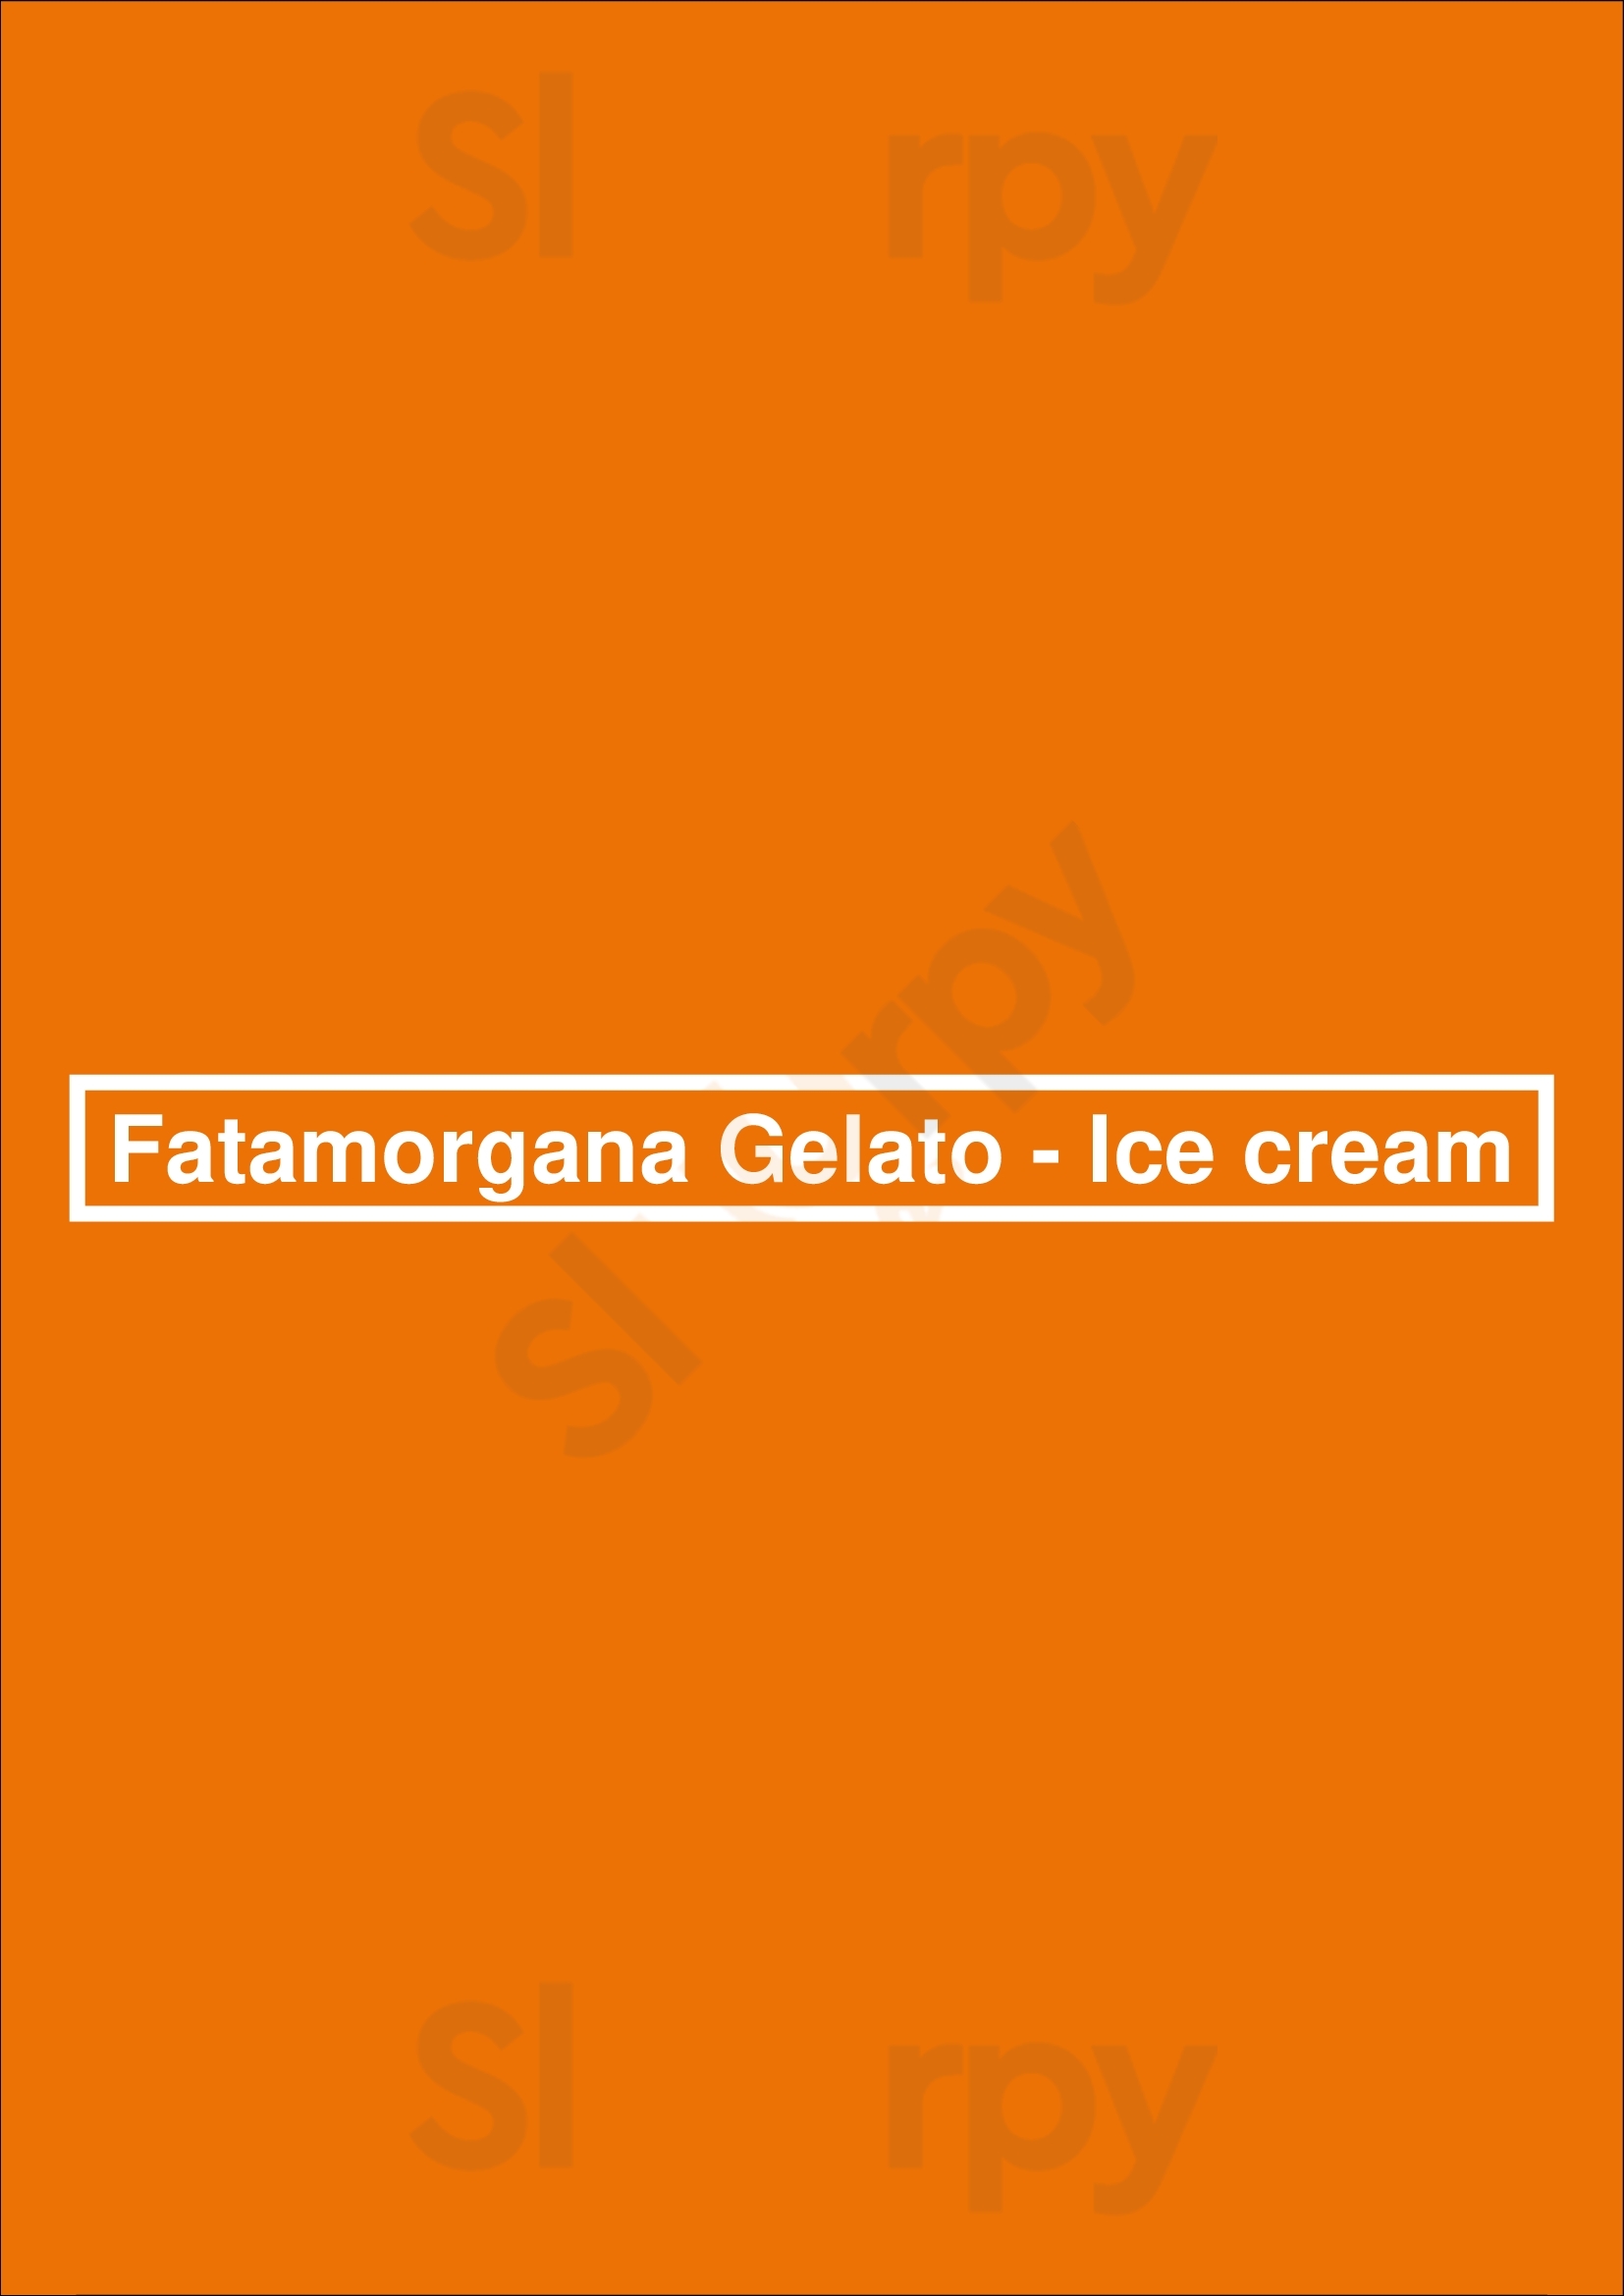 Fatamorgana Gelato - Ice Cream Los Angeles Menu - 1